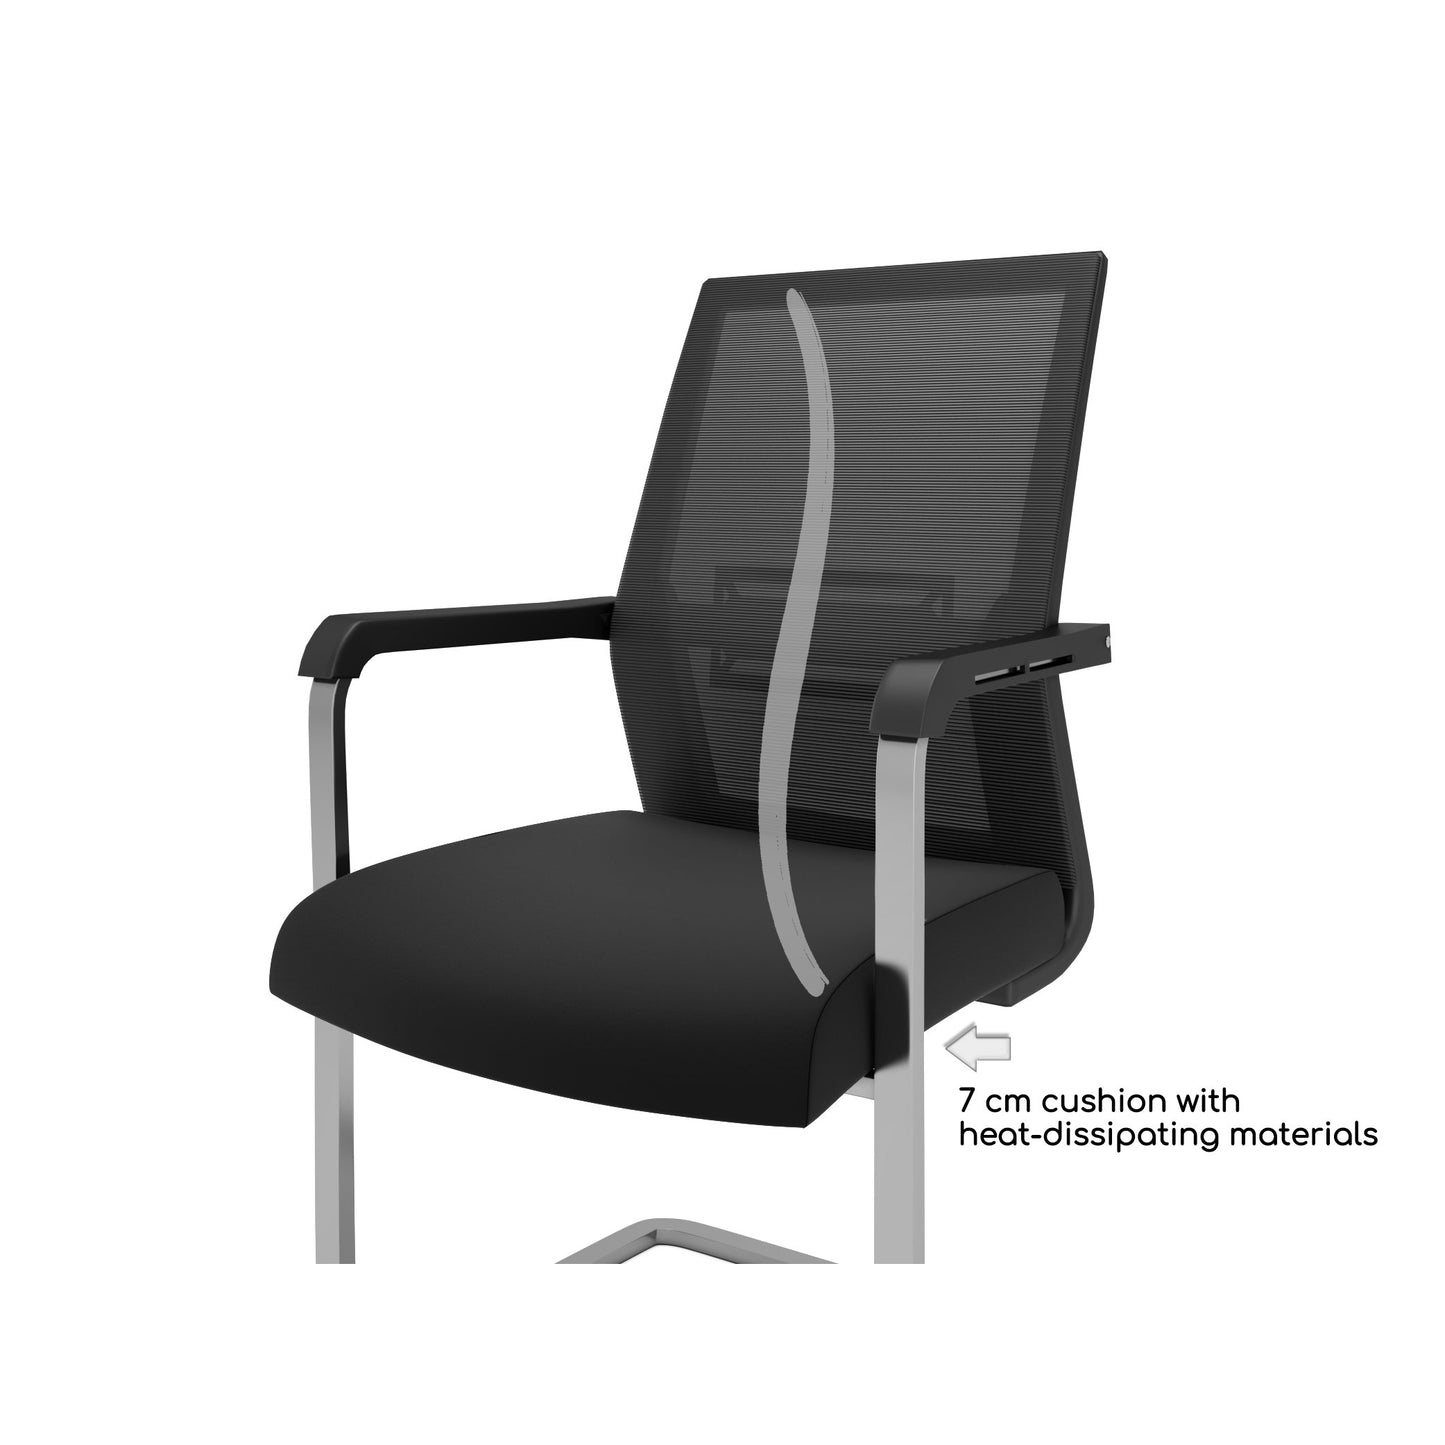 Nancy's Orlando Office Chair - Cantilever Chair - Tiltable Backrest - Mesh - Ergonomic - Black - Aluminum - Plastic - 55 x 56 x 97 cm